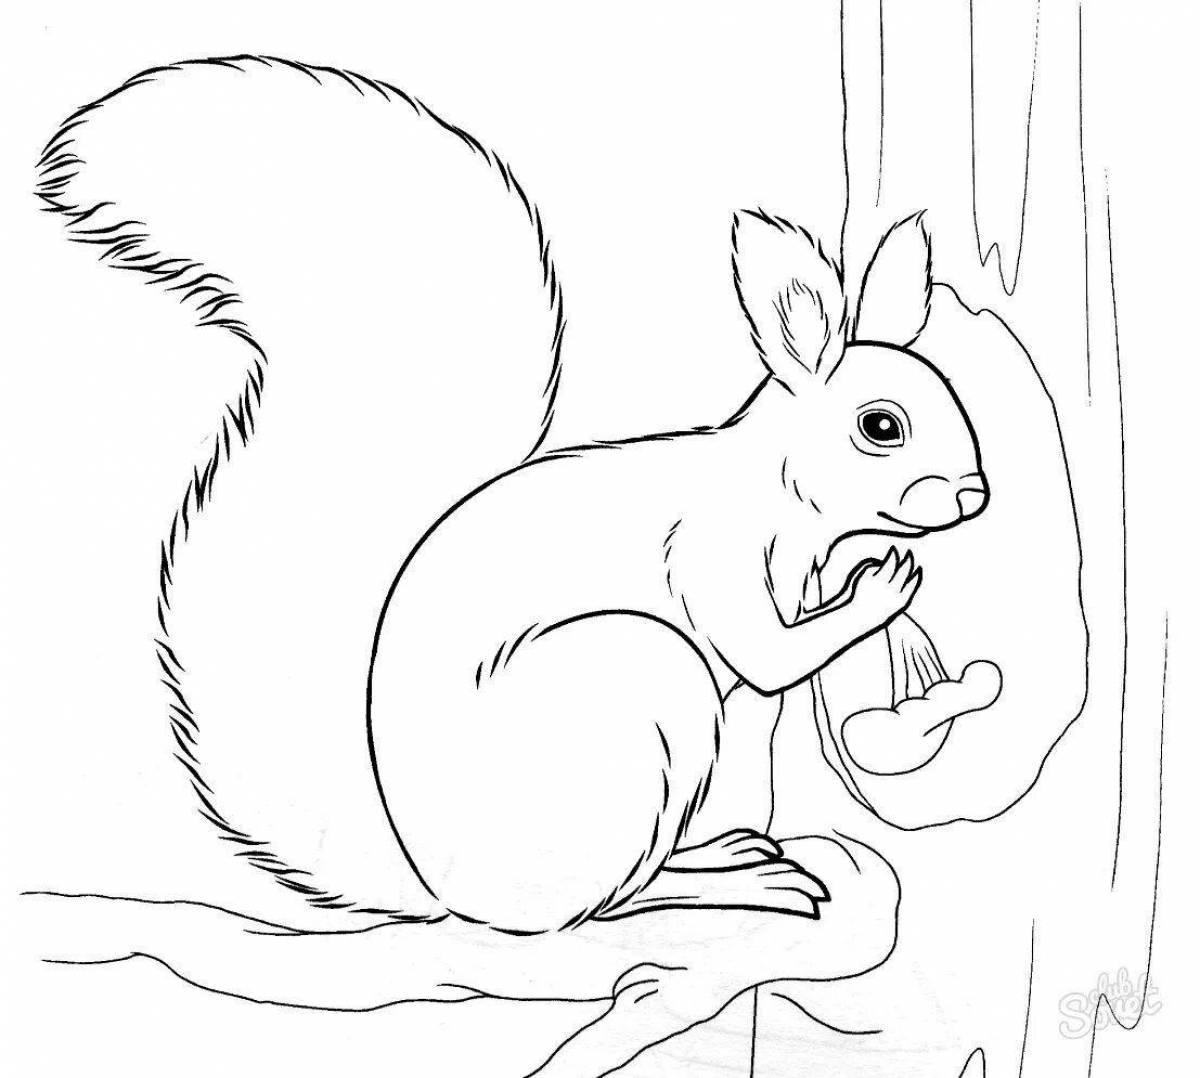 Adorable winter squirrel coloring book